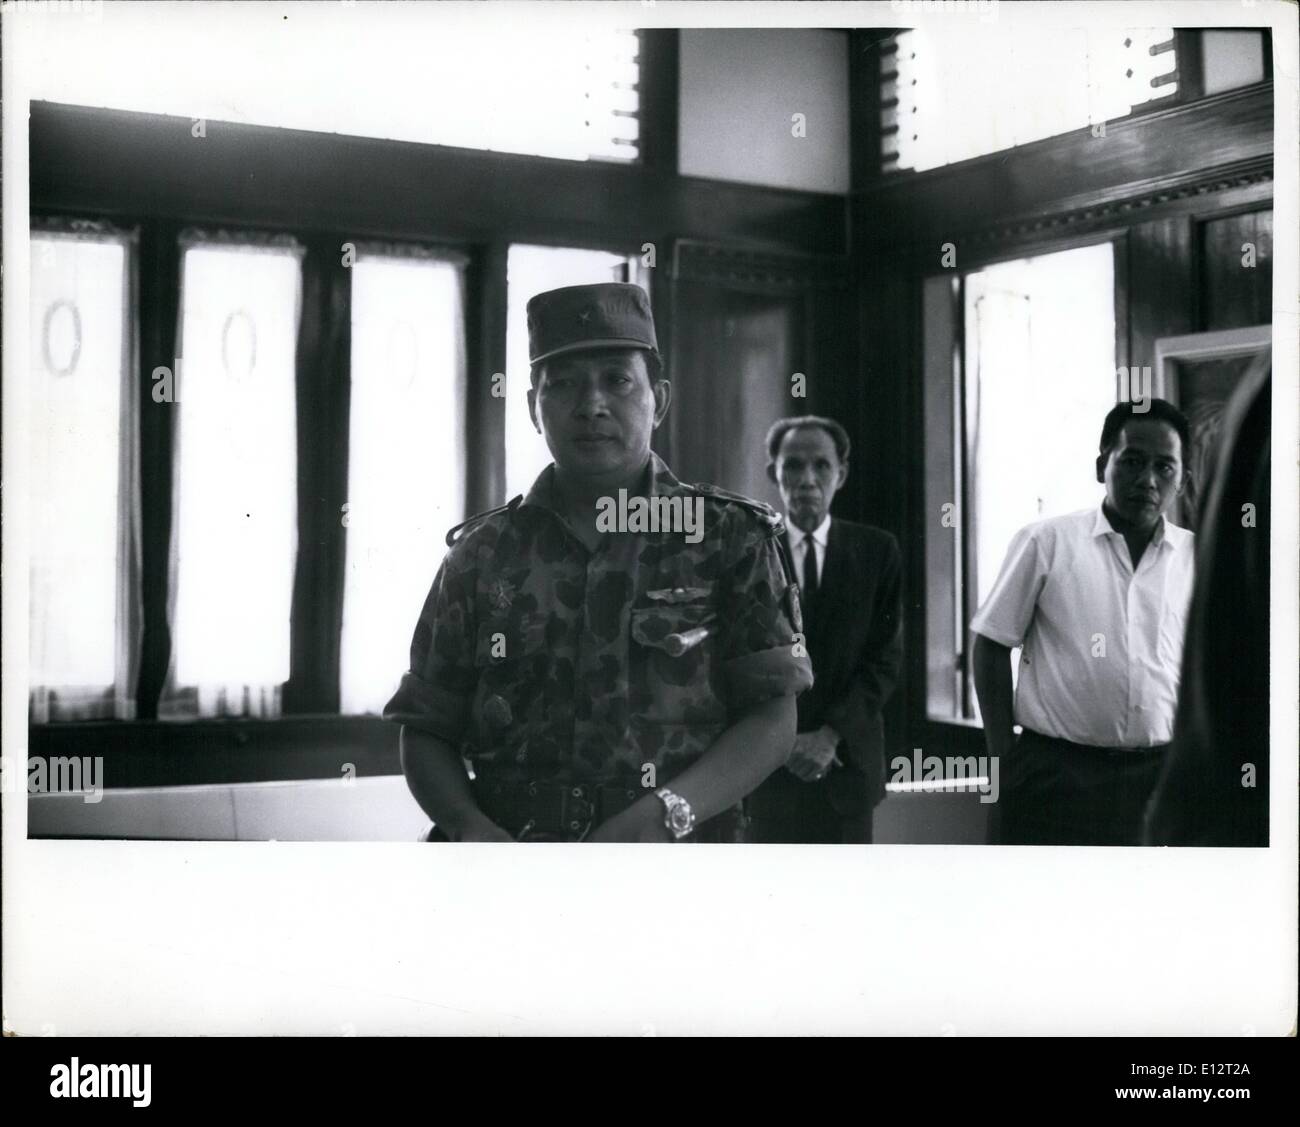 24 février 2012 - Les funérailles galoors -- Le général Suharto, récemment nommé chef d'état-major de l'Armée de terre en Indonésie, dans la maison de la Défense Banque D'Images